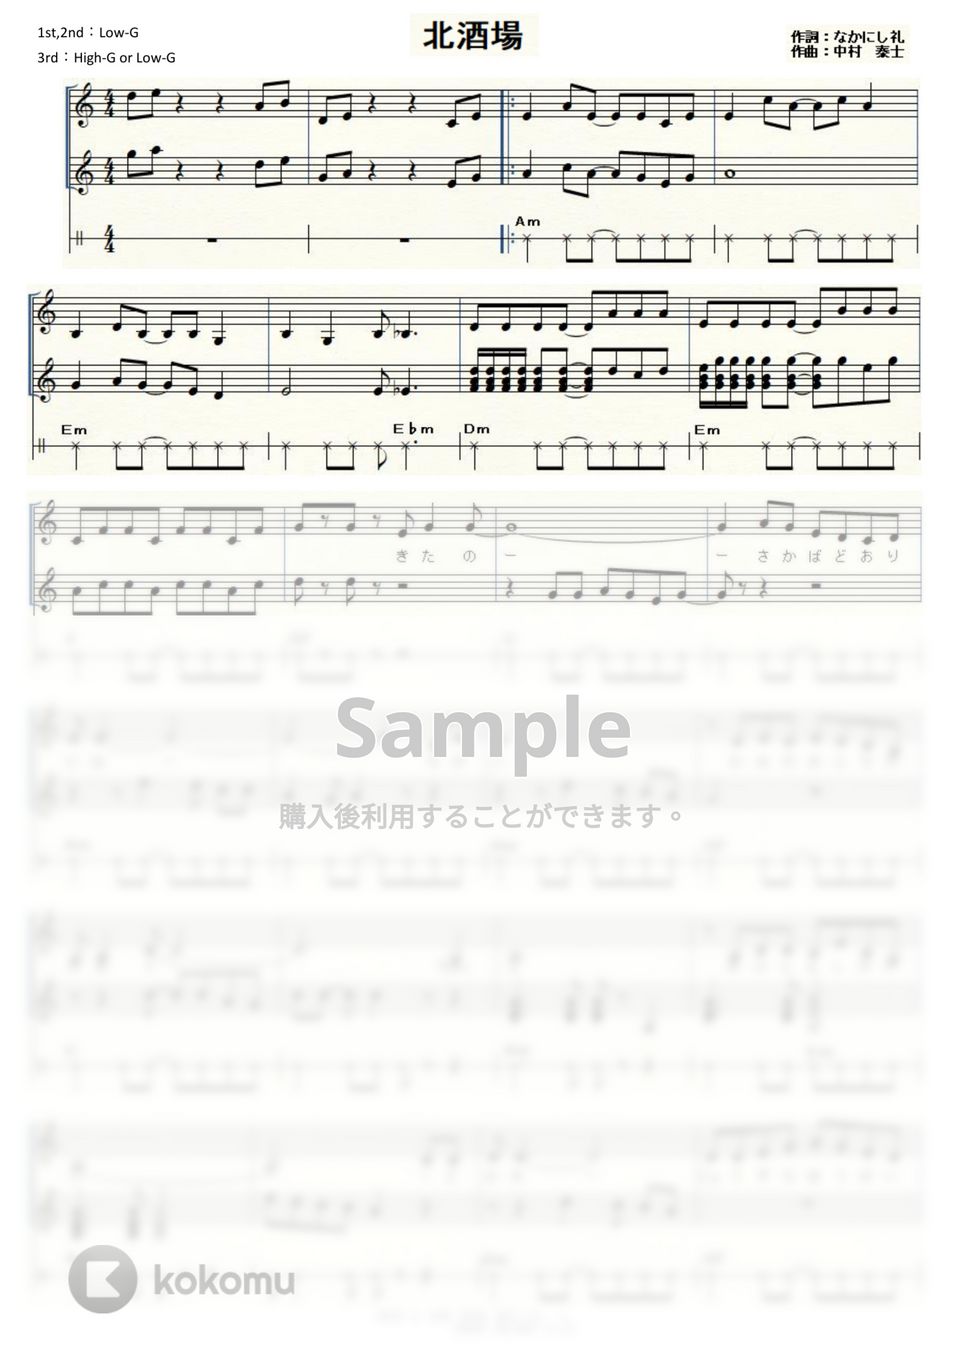 細川たかし - 北酒場 (ウクレレ三重奏 / High-G・Low-G / 中級) by ukulelepapa